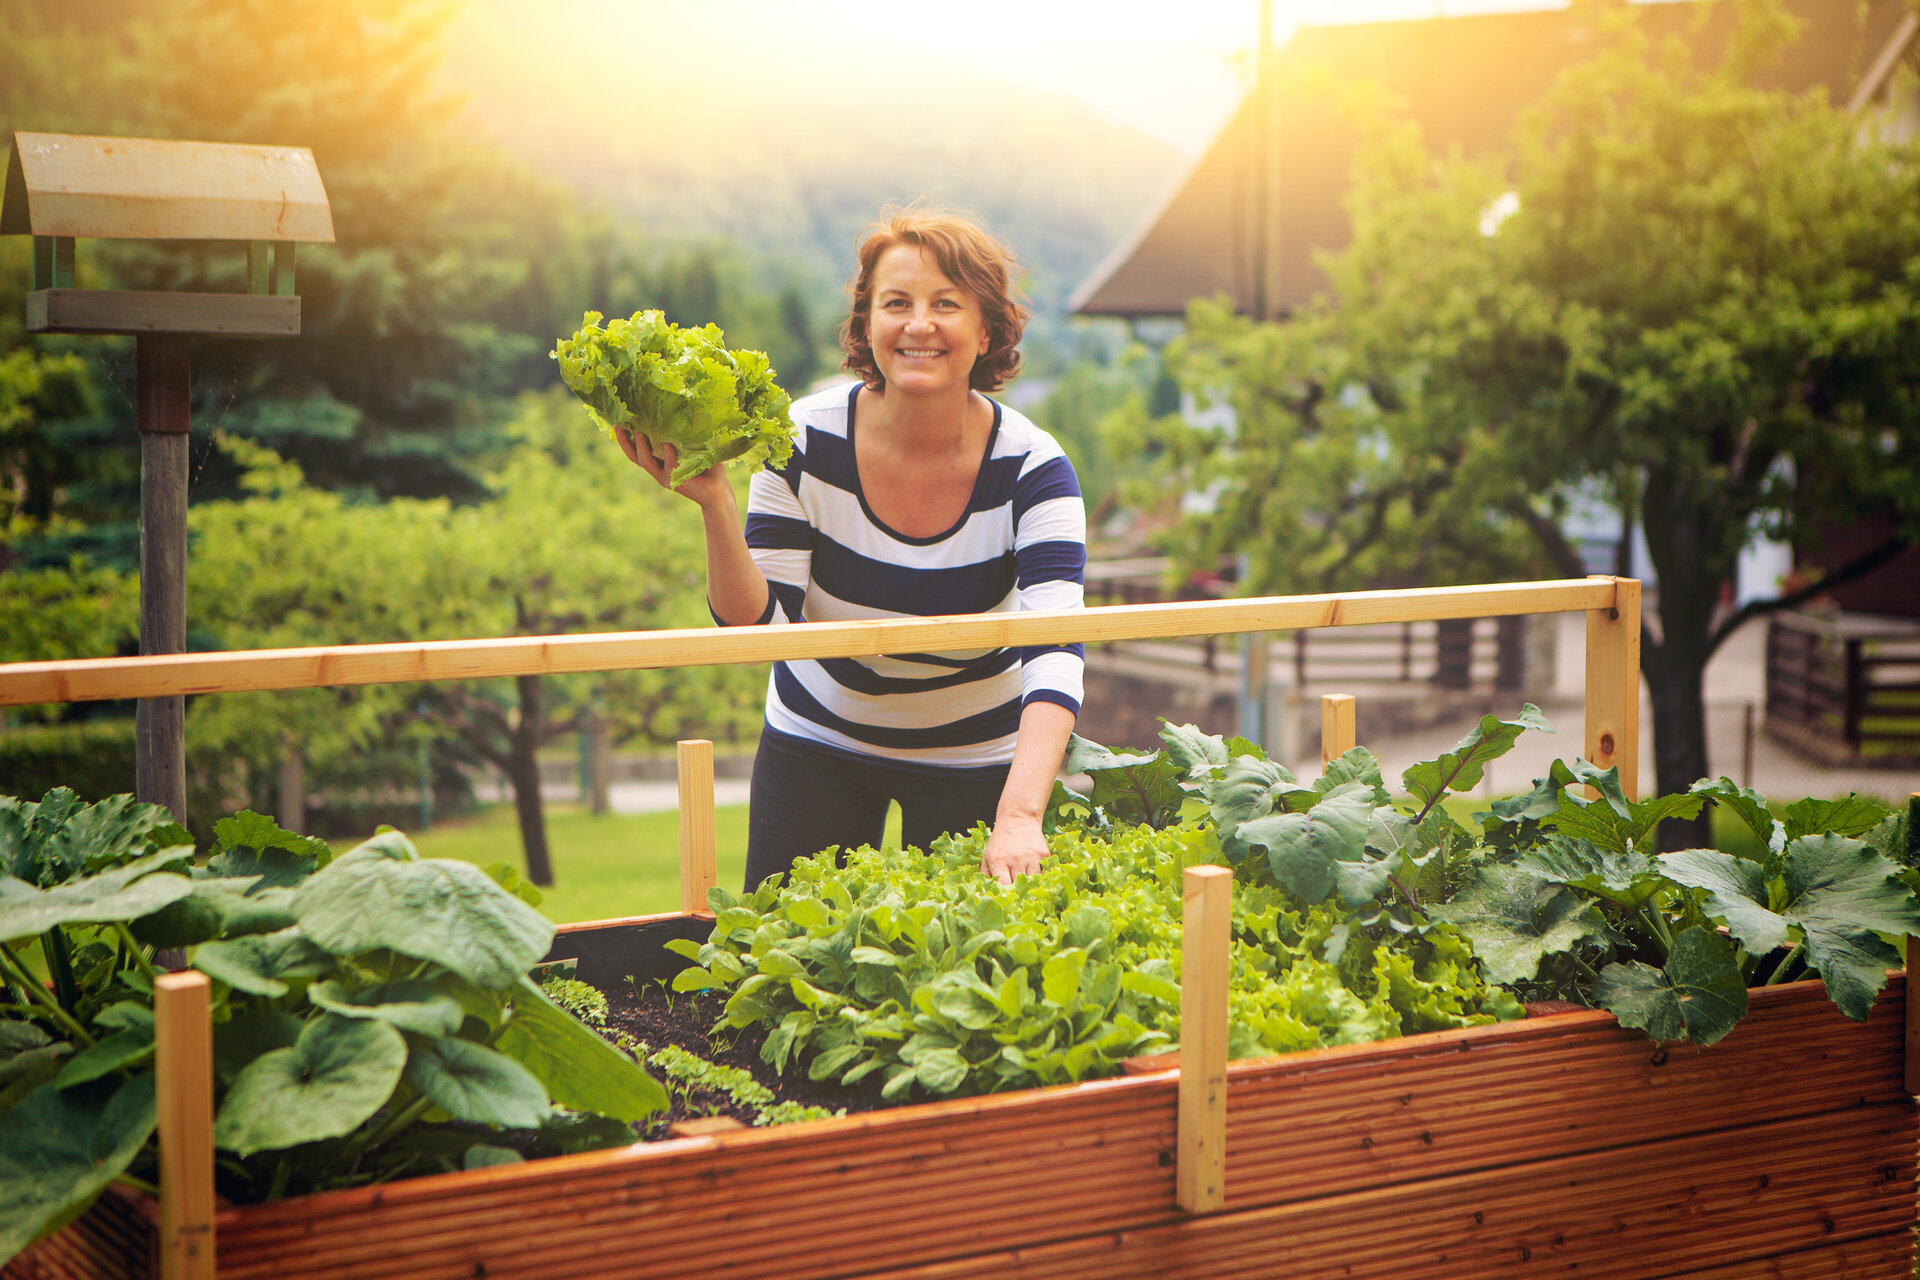 Frau erntet Salat vom eigenen Hochbeet/gardening 17